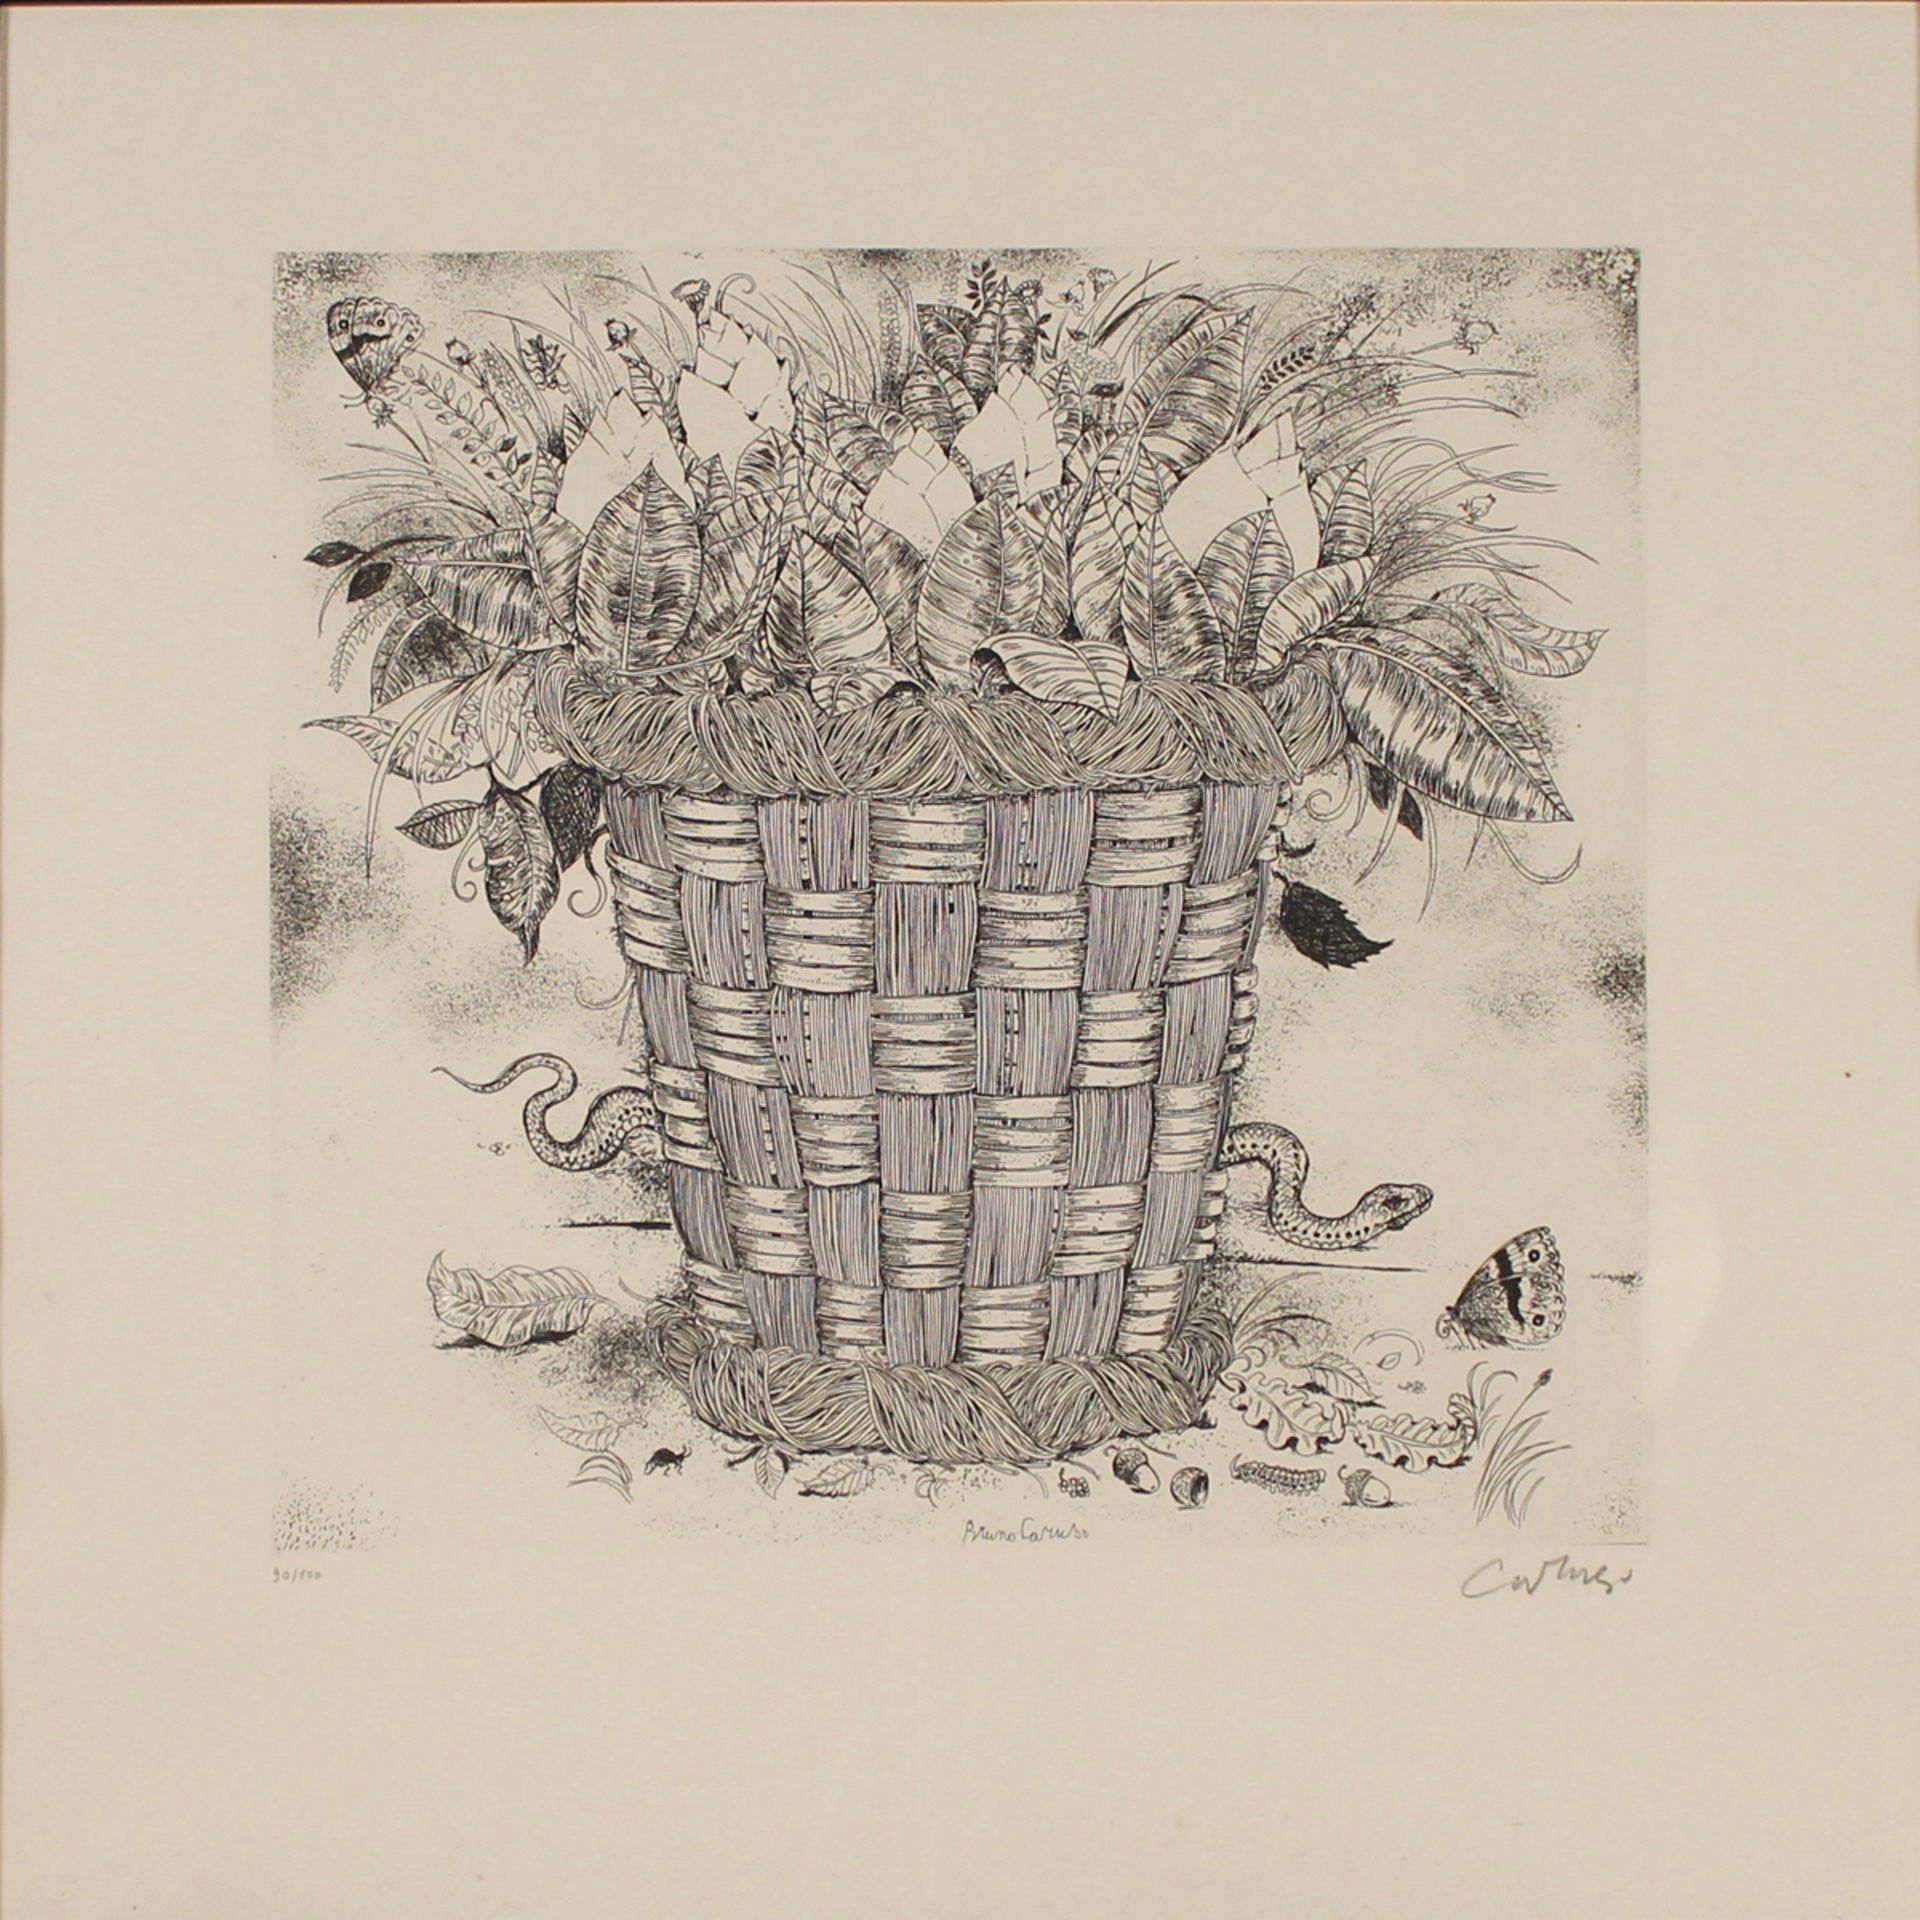 BRUNO CARUSO (1927-2018) "Vaso con fiori" - "Vase with flowers"